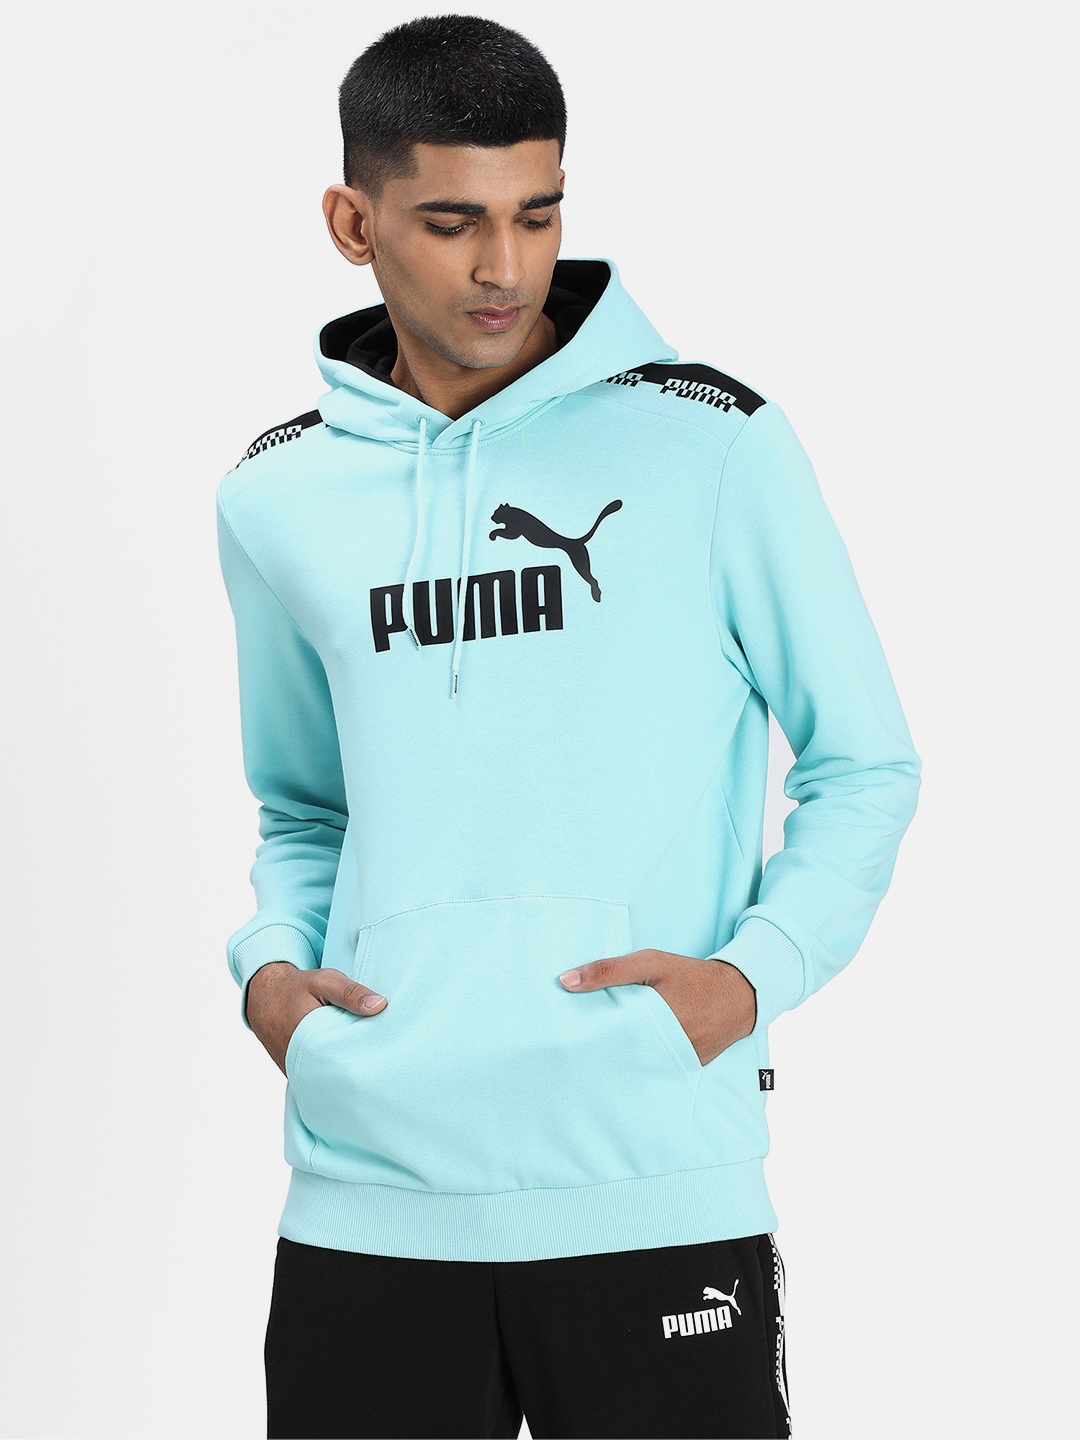 Buy Puma Men Blue & Black Printed AMPLIFIED Hoodie TR Hooded Sweatshirt ...